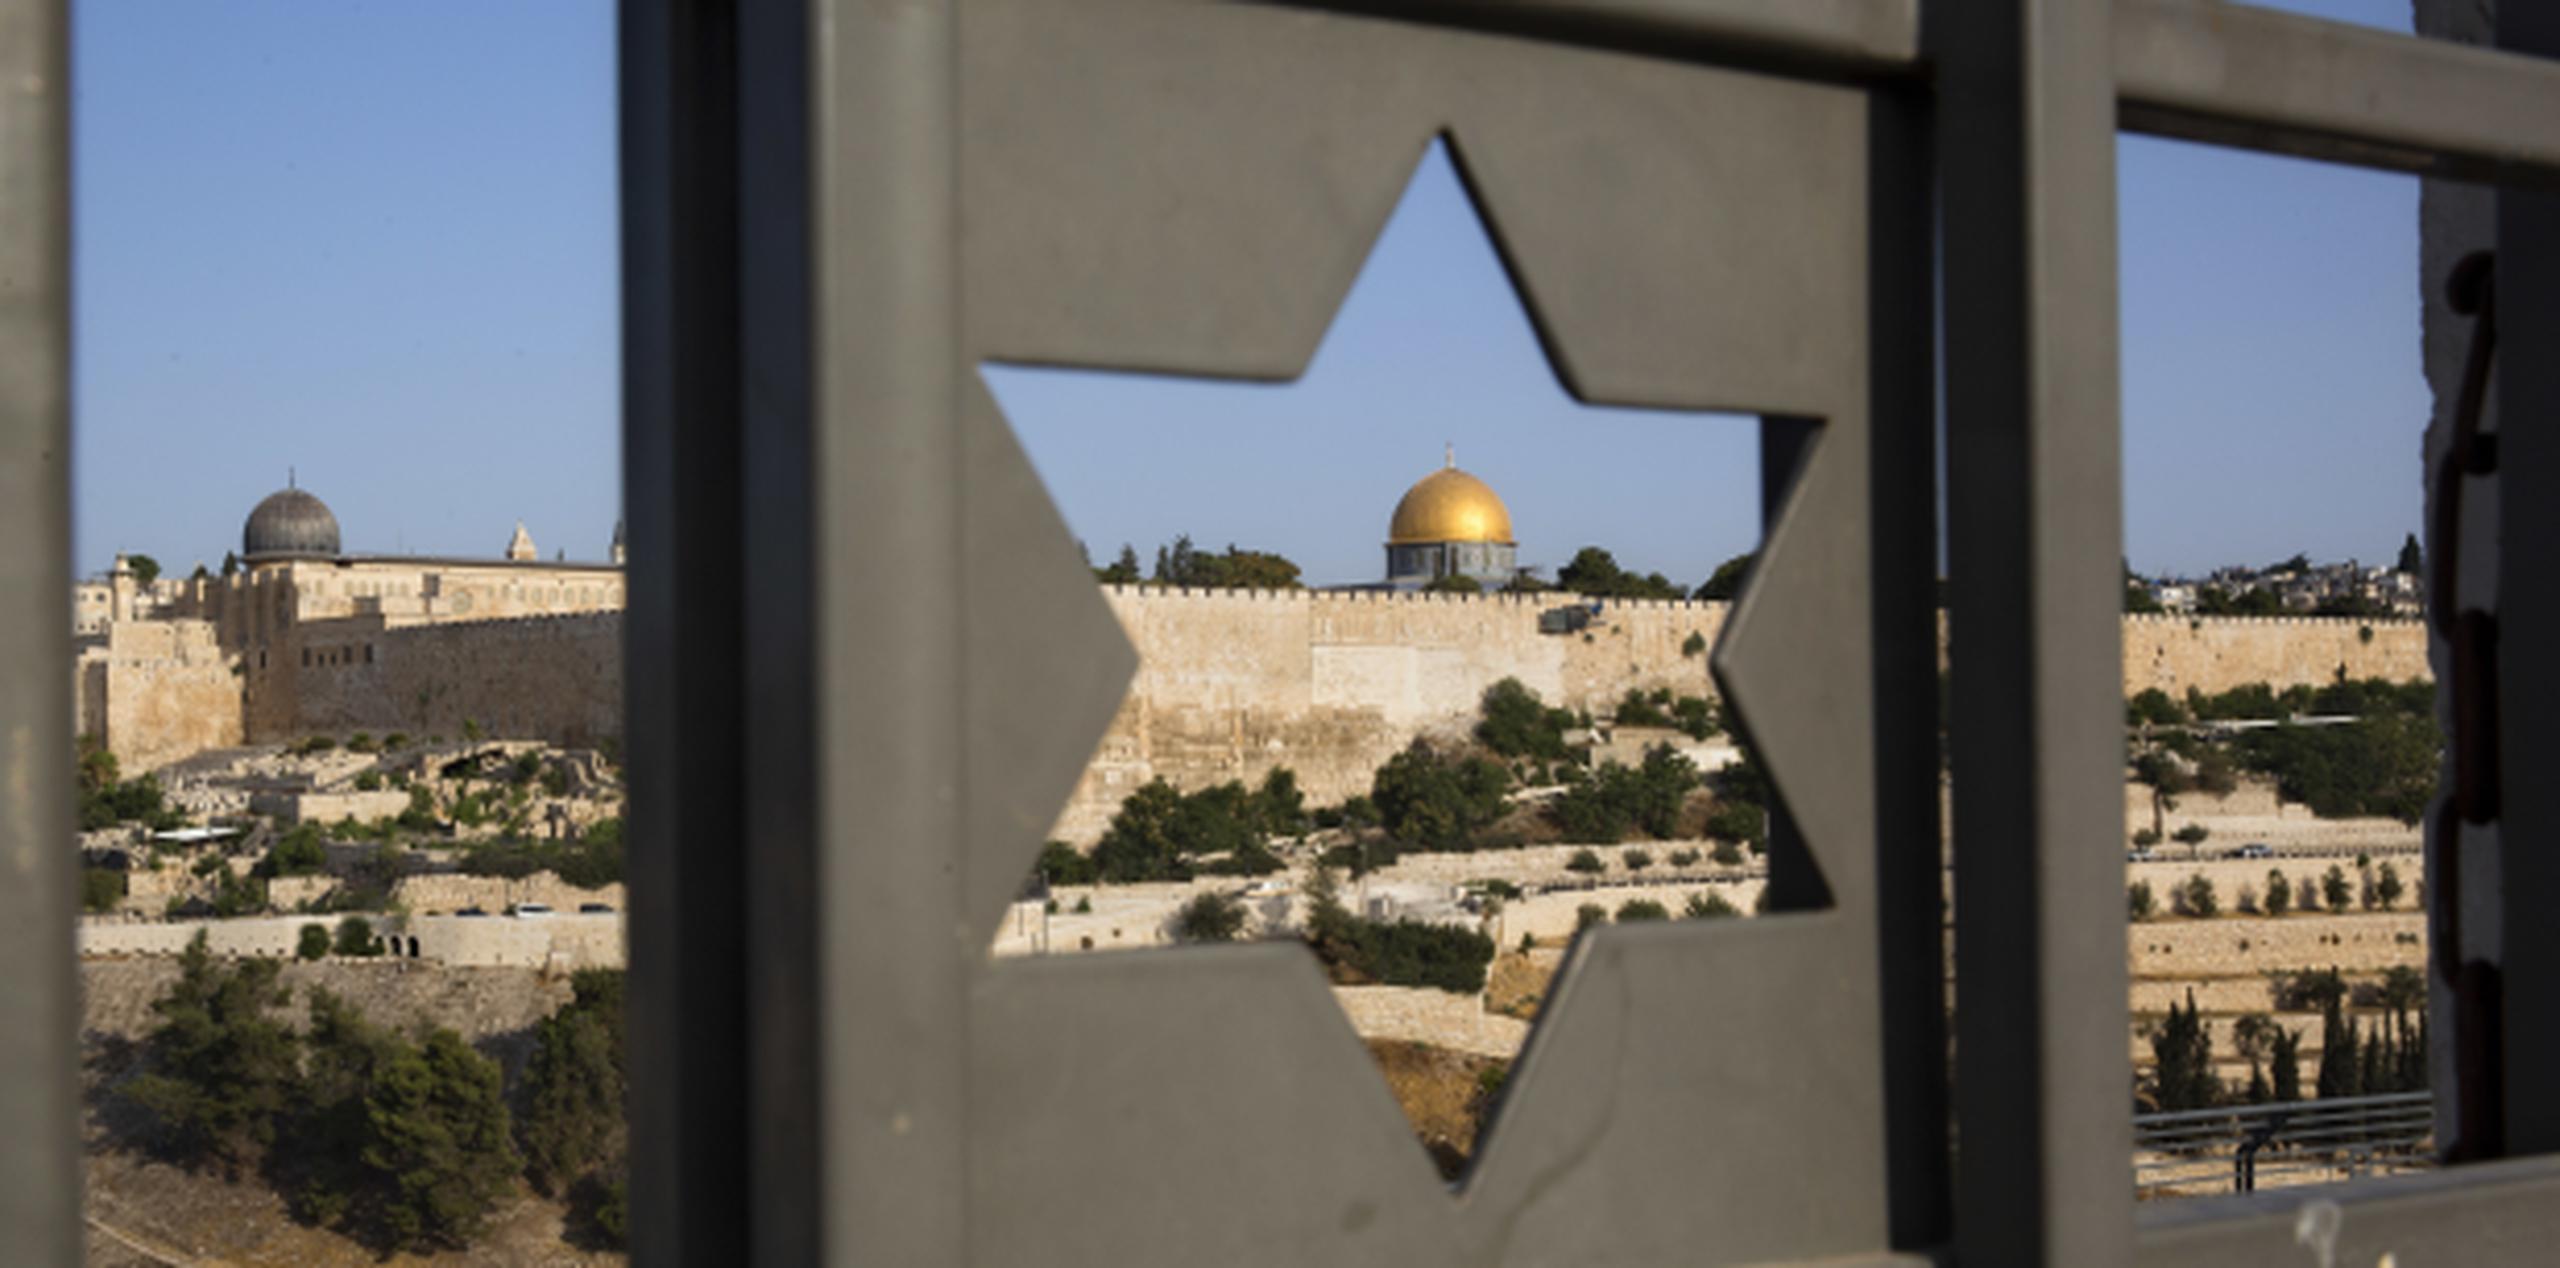 La Ciudad Vieja de Jerusalén, aquí vista a través de una ventana con forma de la estrella de David, es eje d diversas tensiones entre grandes grupos religiosos del mundo. (AP)